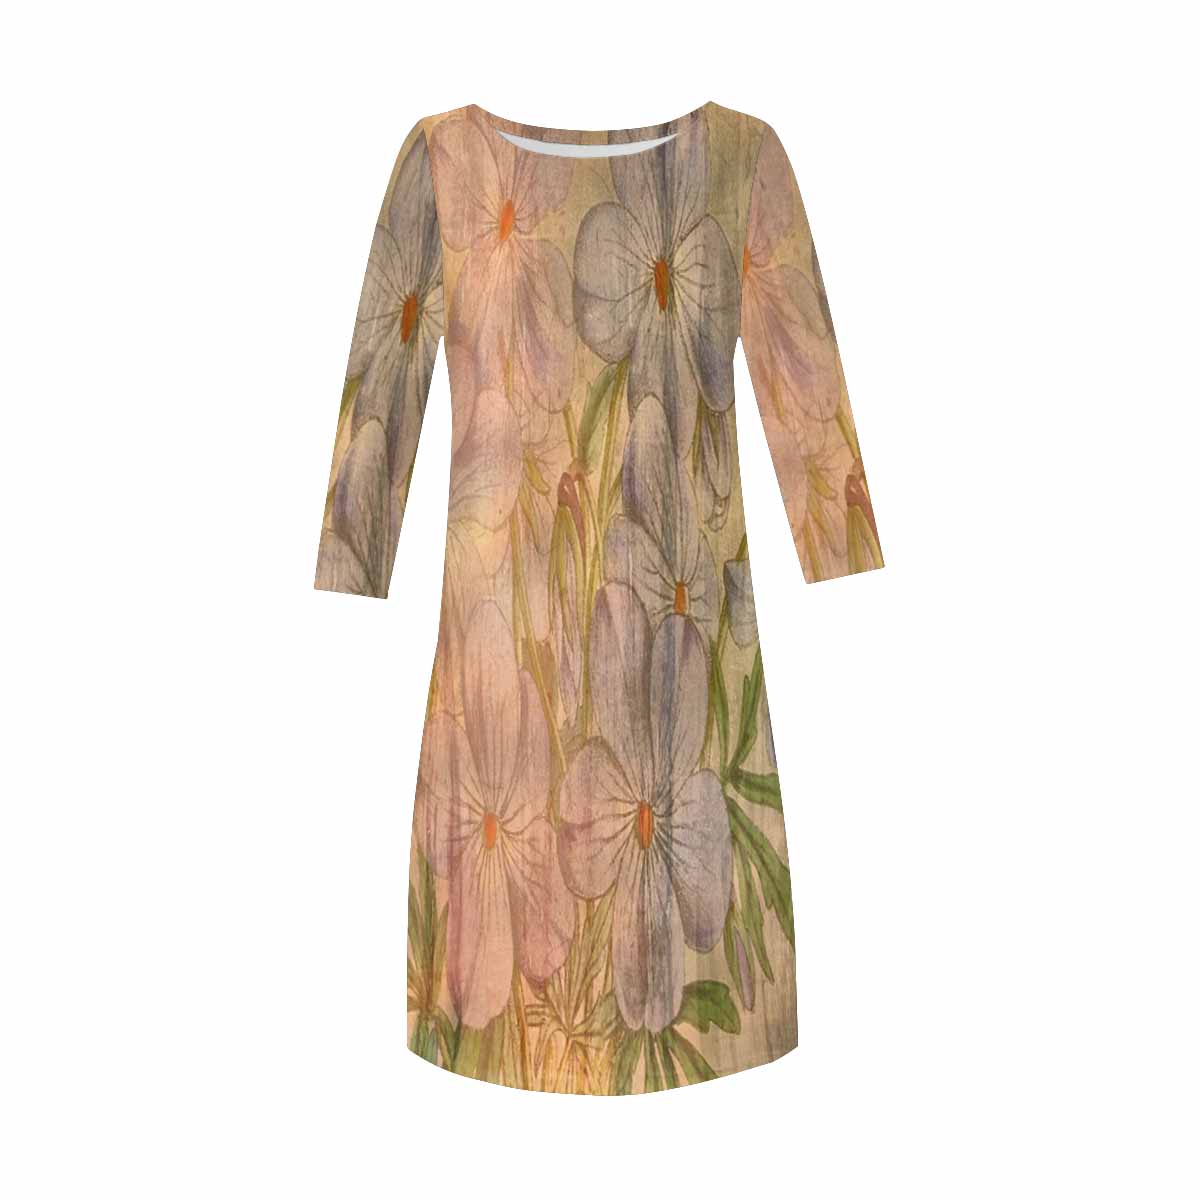 Vintage floral loose dress, model D29532 Design 13xx